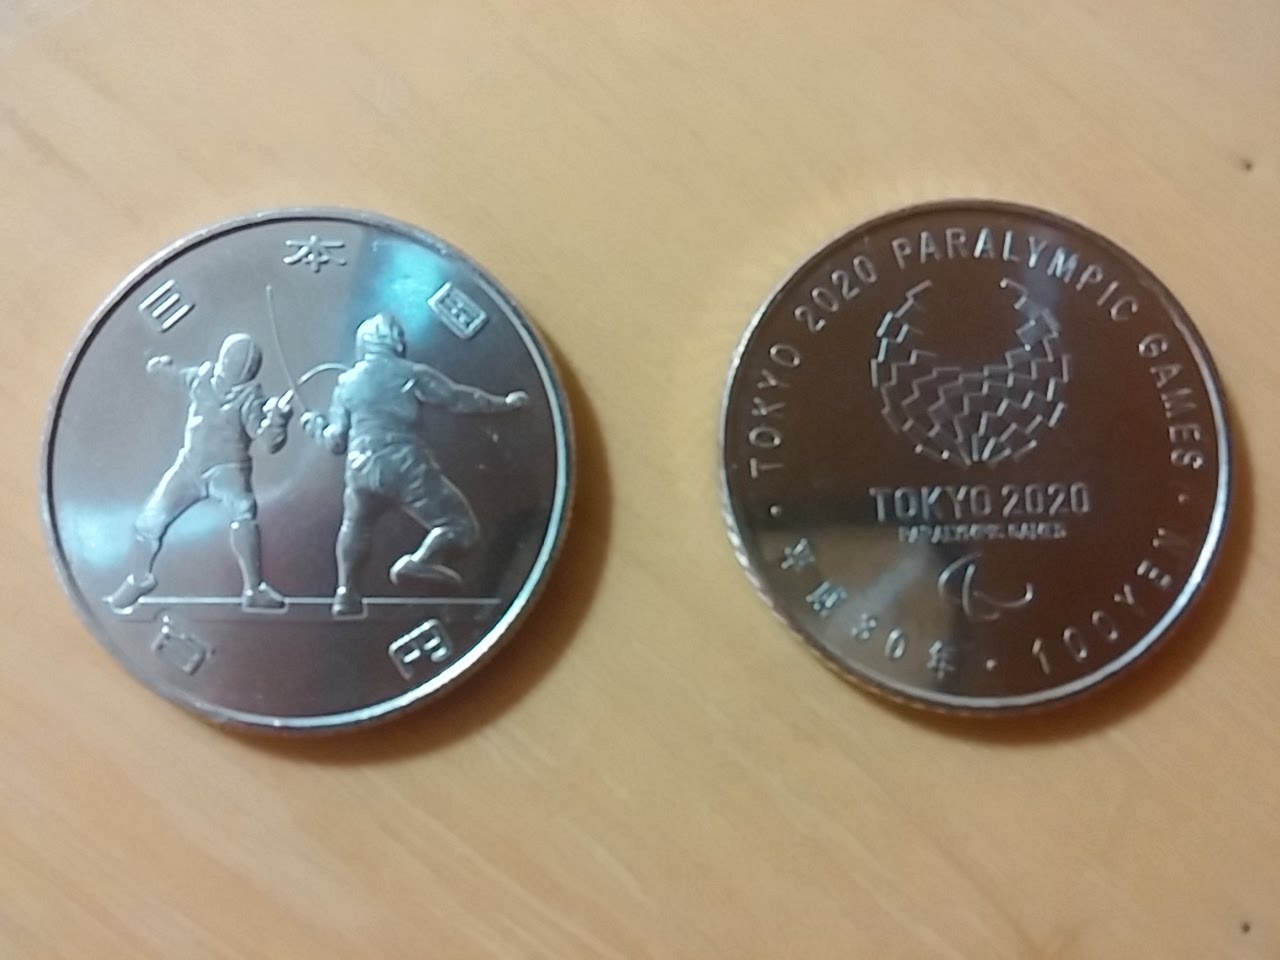 『2020年』東京オリンピック記念硬貨を入手| Stock Hunterの御機嫌伺